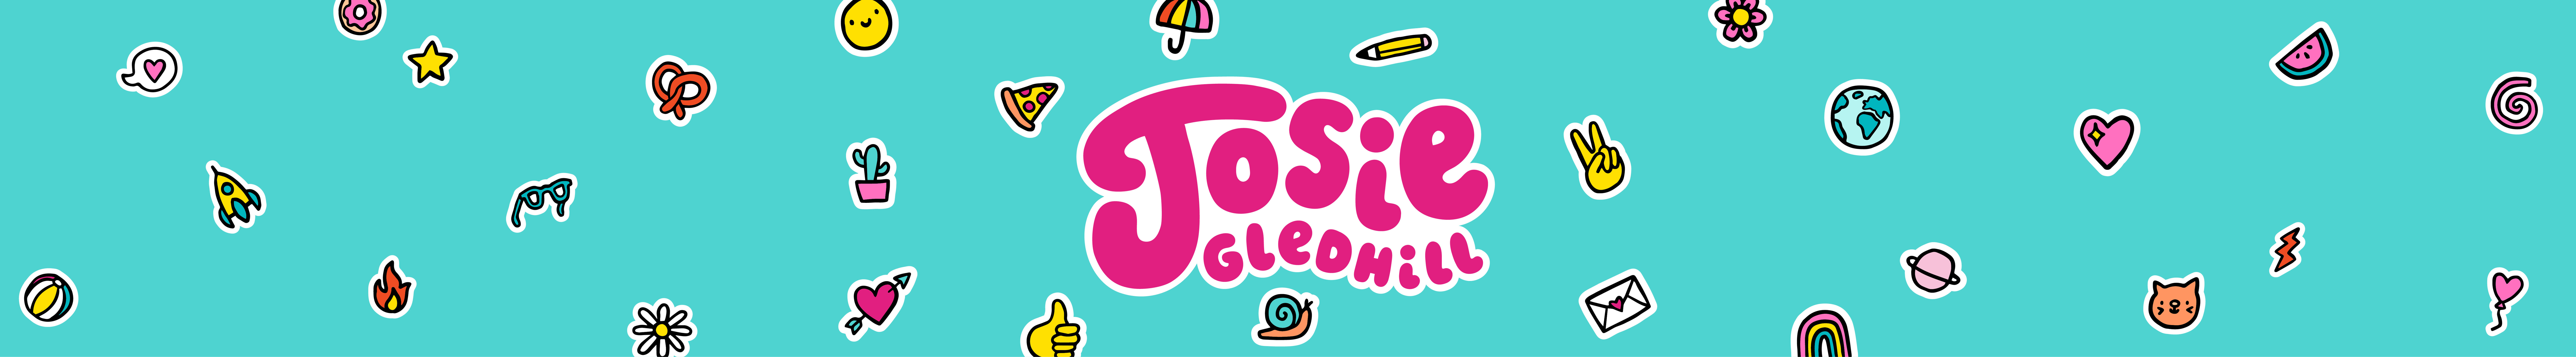 Josie Gledhill's profile banner